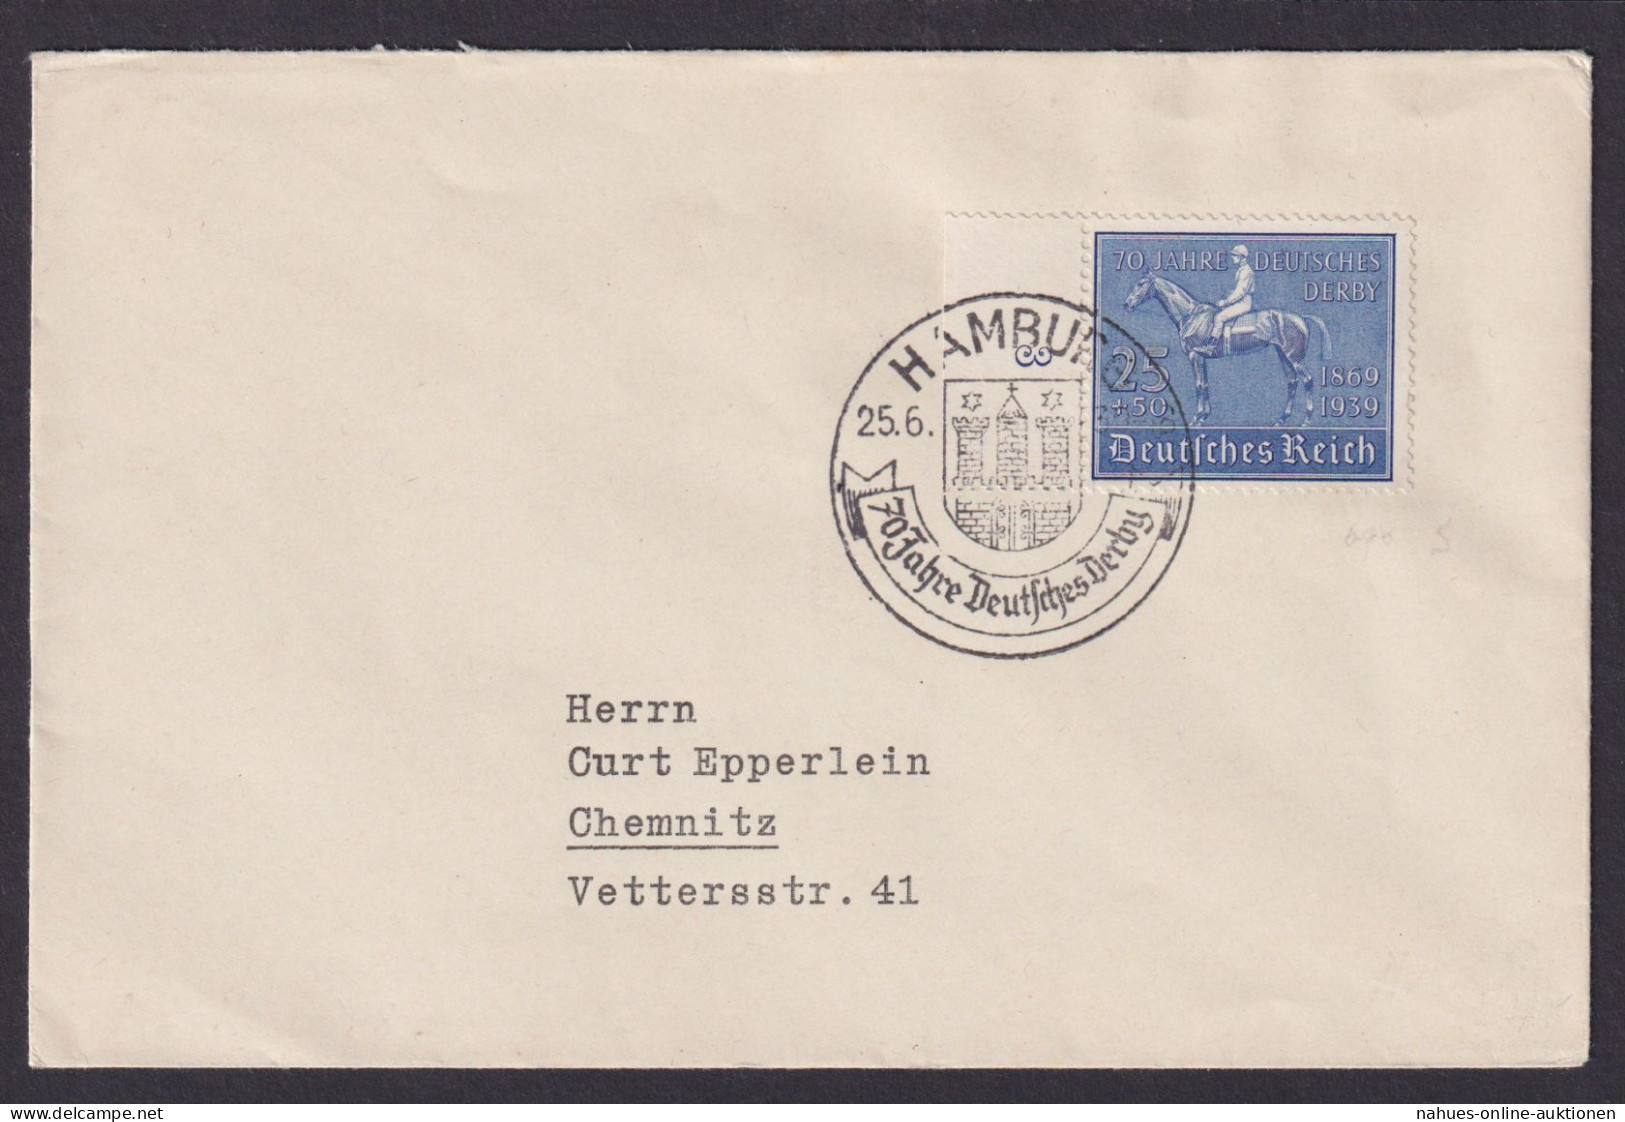 Hamburg Deutsches Reich Brief Chemnitz Sachsen SST 70 Jahre Deutsches Derby - Briefe U. Dokumente